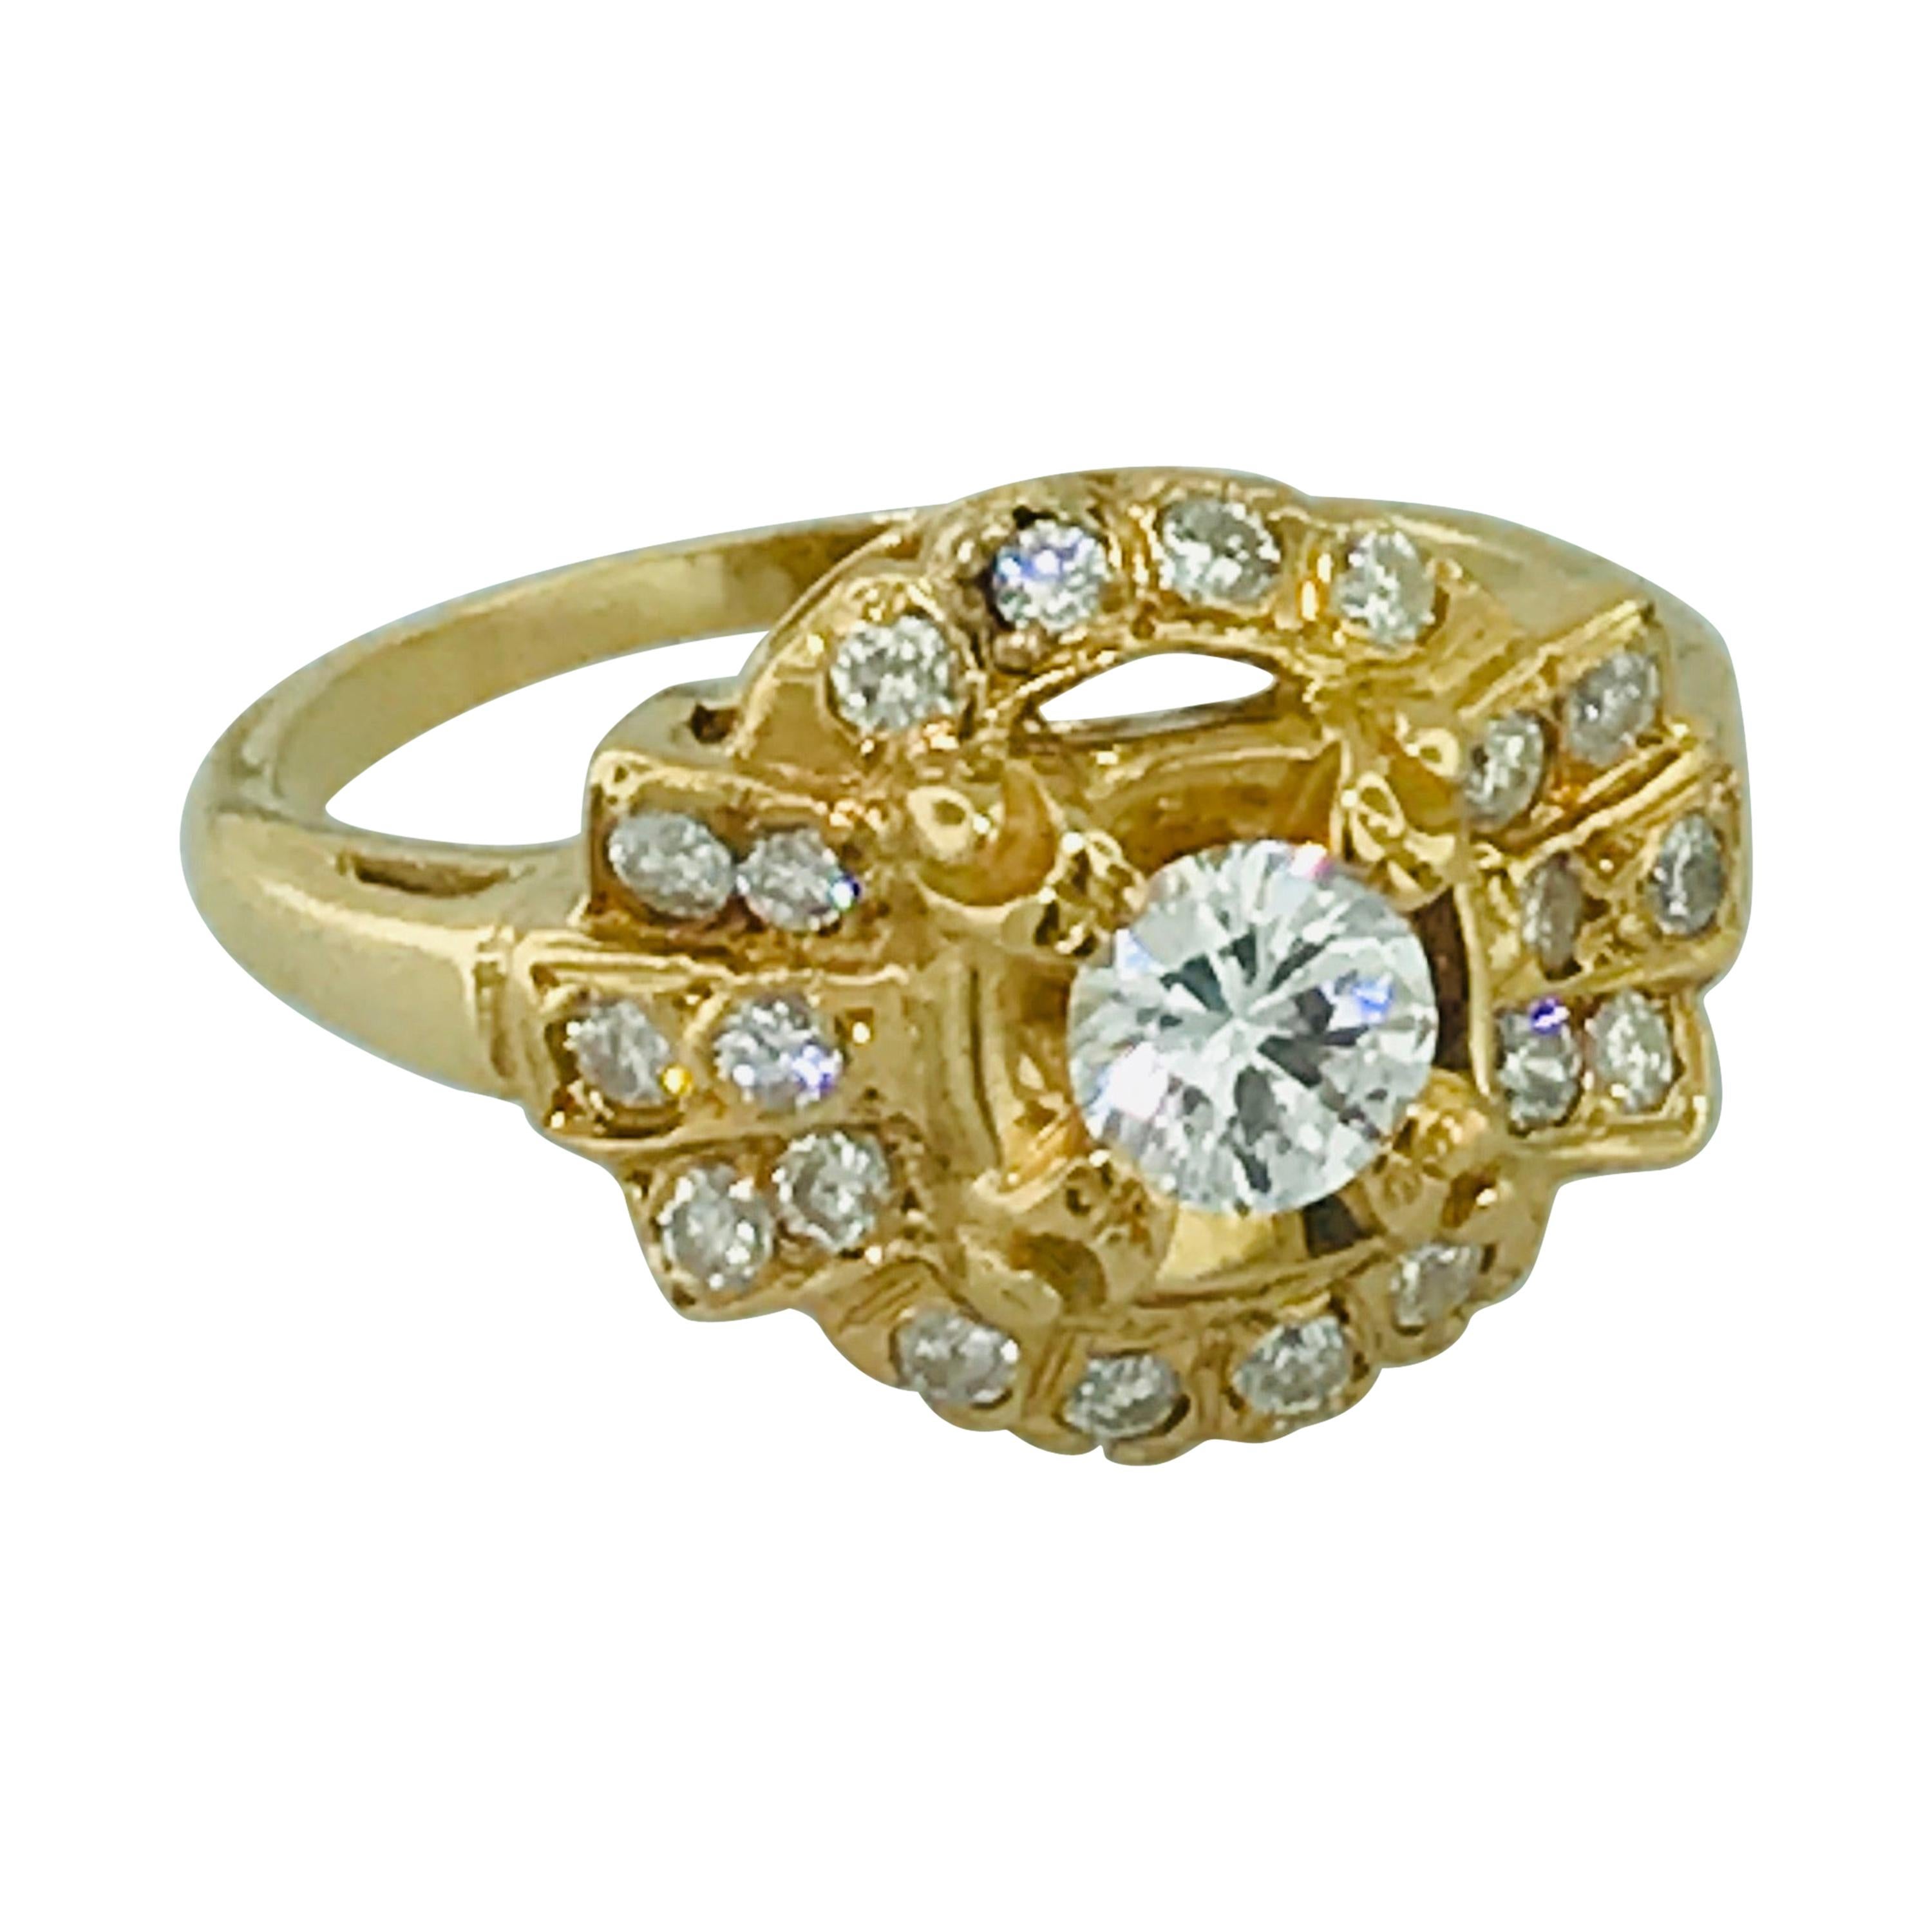 1.00 Carat Diamond Vintage Estate Ring in 14 Karat Yellow Gold, circa 1935